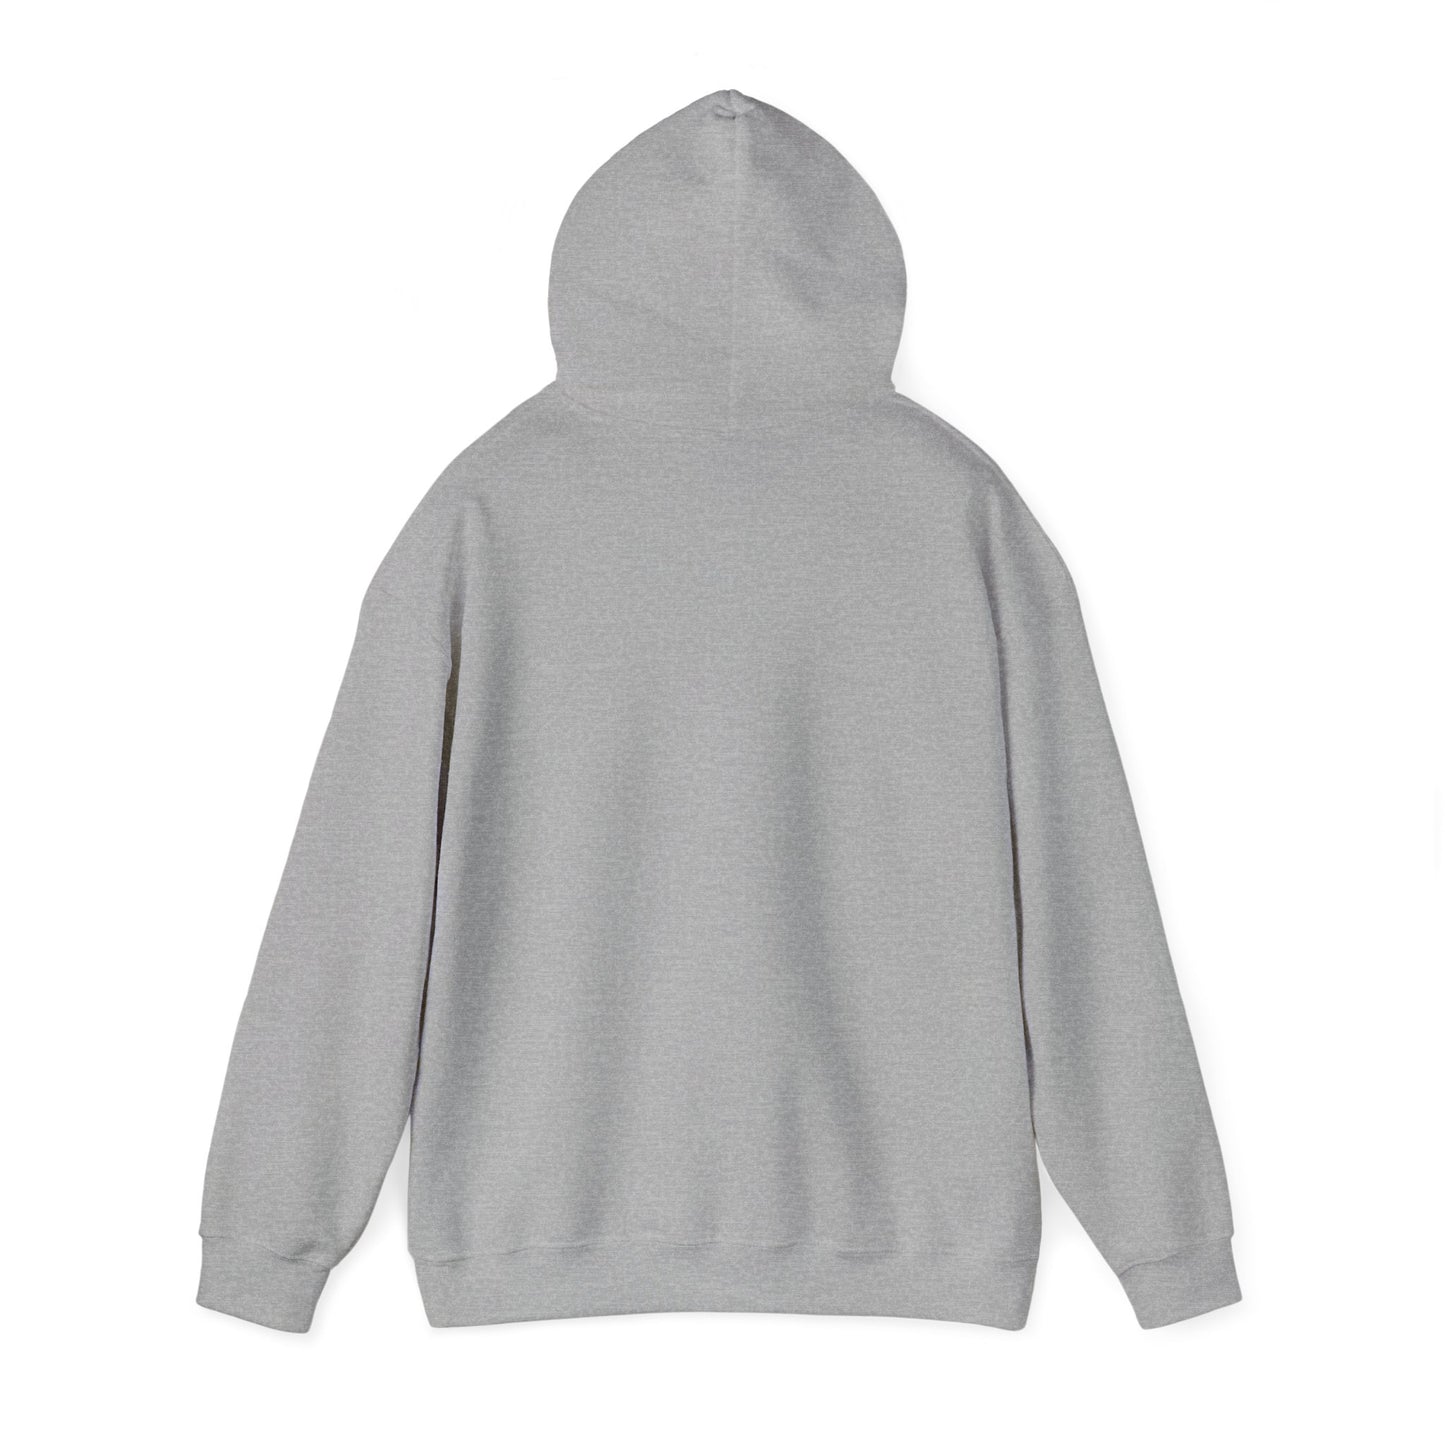 Cascade Shed Dog Club Unisex Heavy Blend™ Hooded Sweatshirt